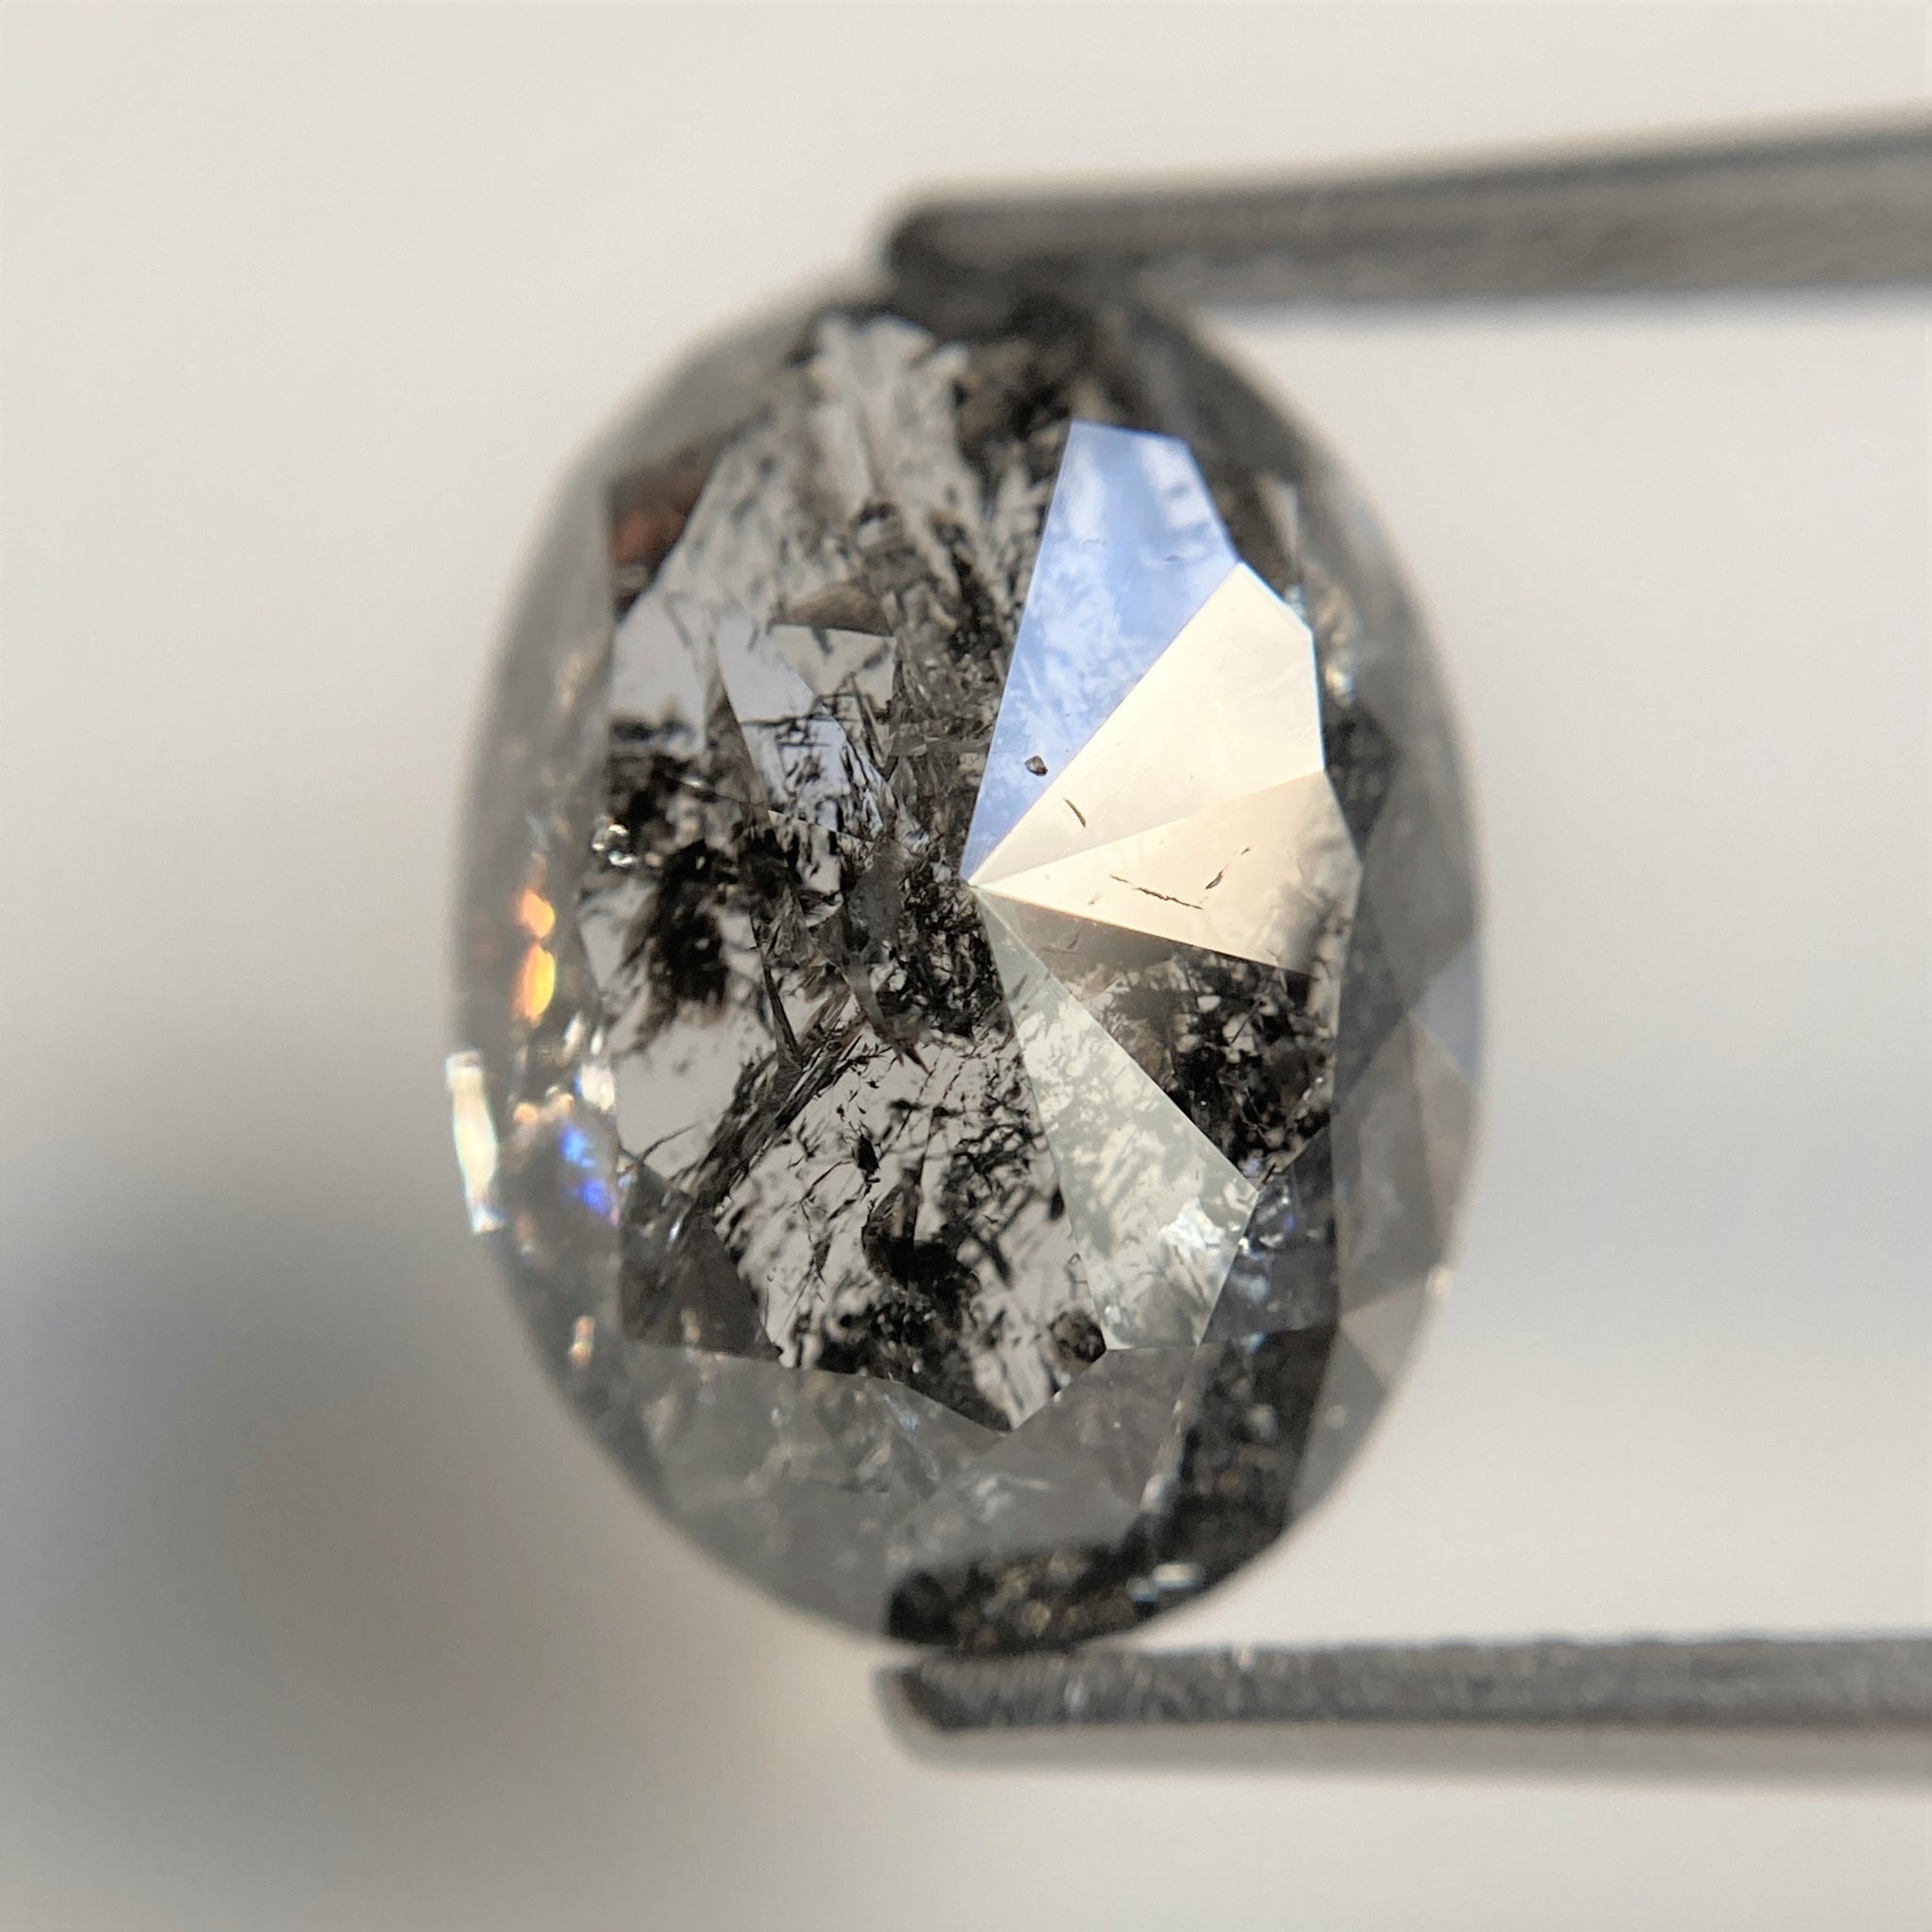 6.43 Ct Natural loose diamond Oval Shape Salt and Pepper, 12.76 mm x 9.43 mm x 6.16 mm Full Rose-Cut Oval shape natural diamond, SJ96-06